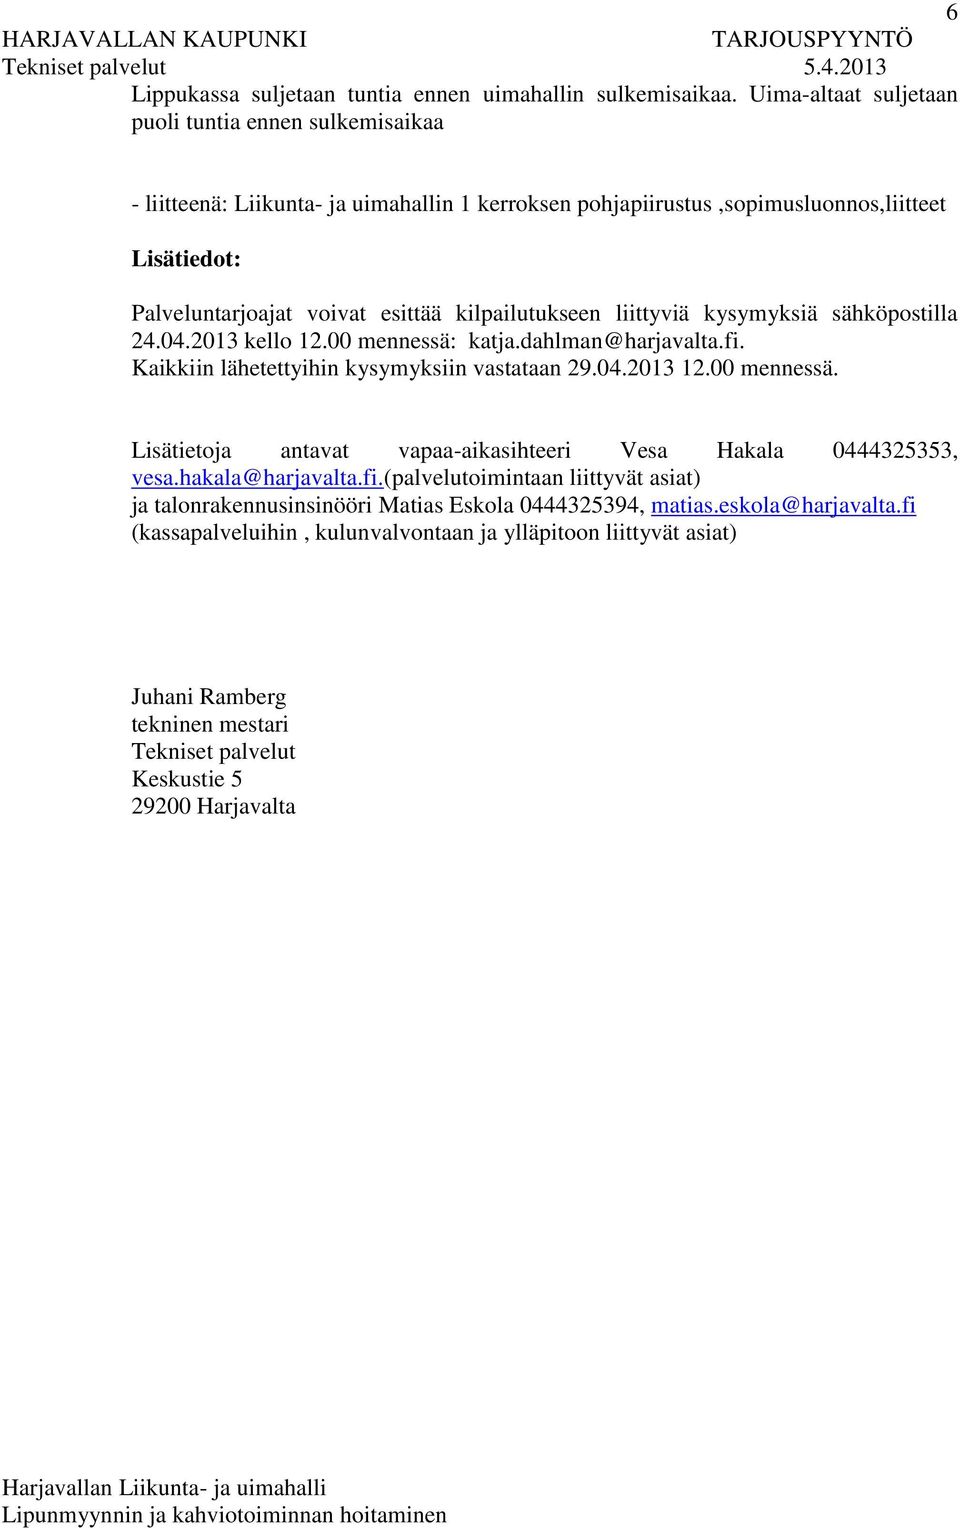 kilpailutukseen liittyviä kysymyksiä sähköpostilla 24.04.2013 kello 12.00 mennessä: katja.dahlman@harjavalta.fi. Kaikkiin lähetettyihin kysymyksiin vastataan 29.04.2013 12.00 mennessä. Lisätietoja antavat vapaa-aikasihteeri Vesa Hakala 0444325353, vesa.